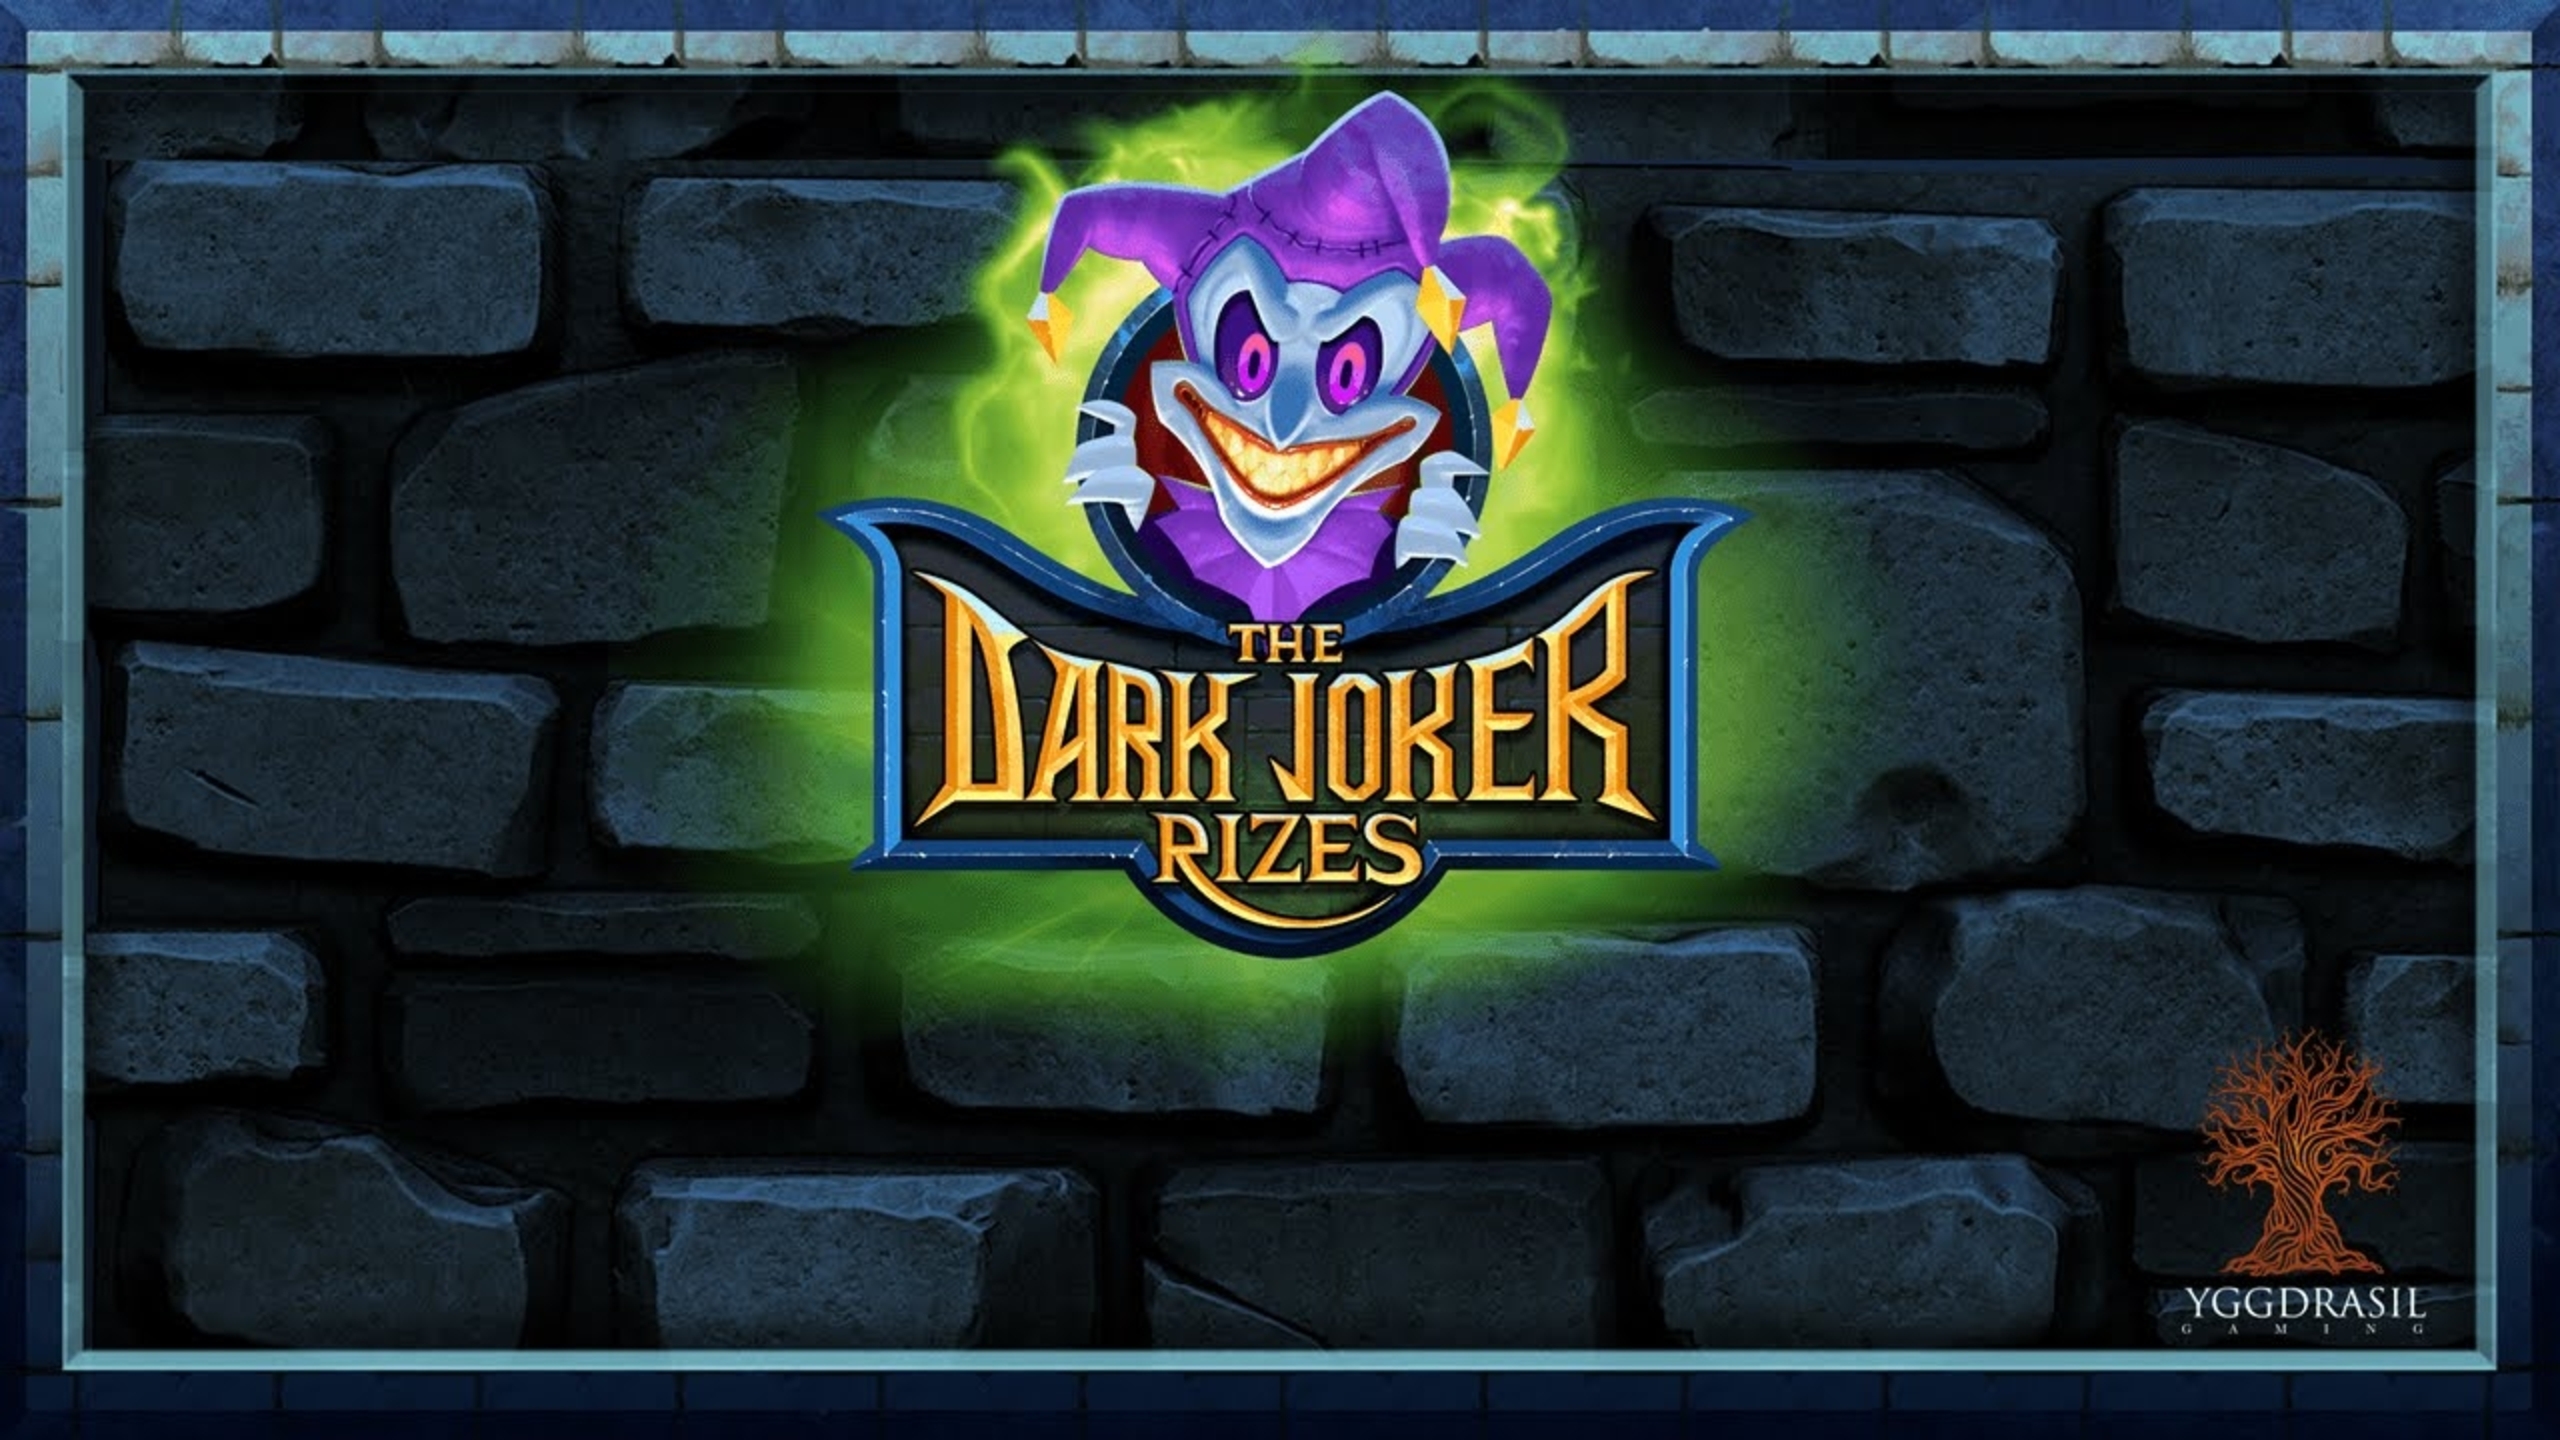 The Dark Joker Rizes demo